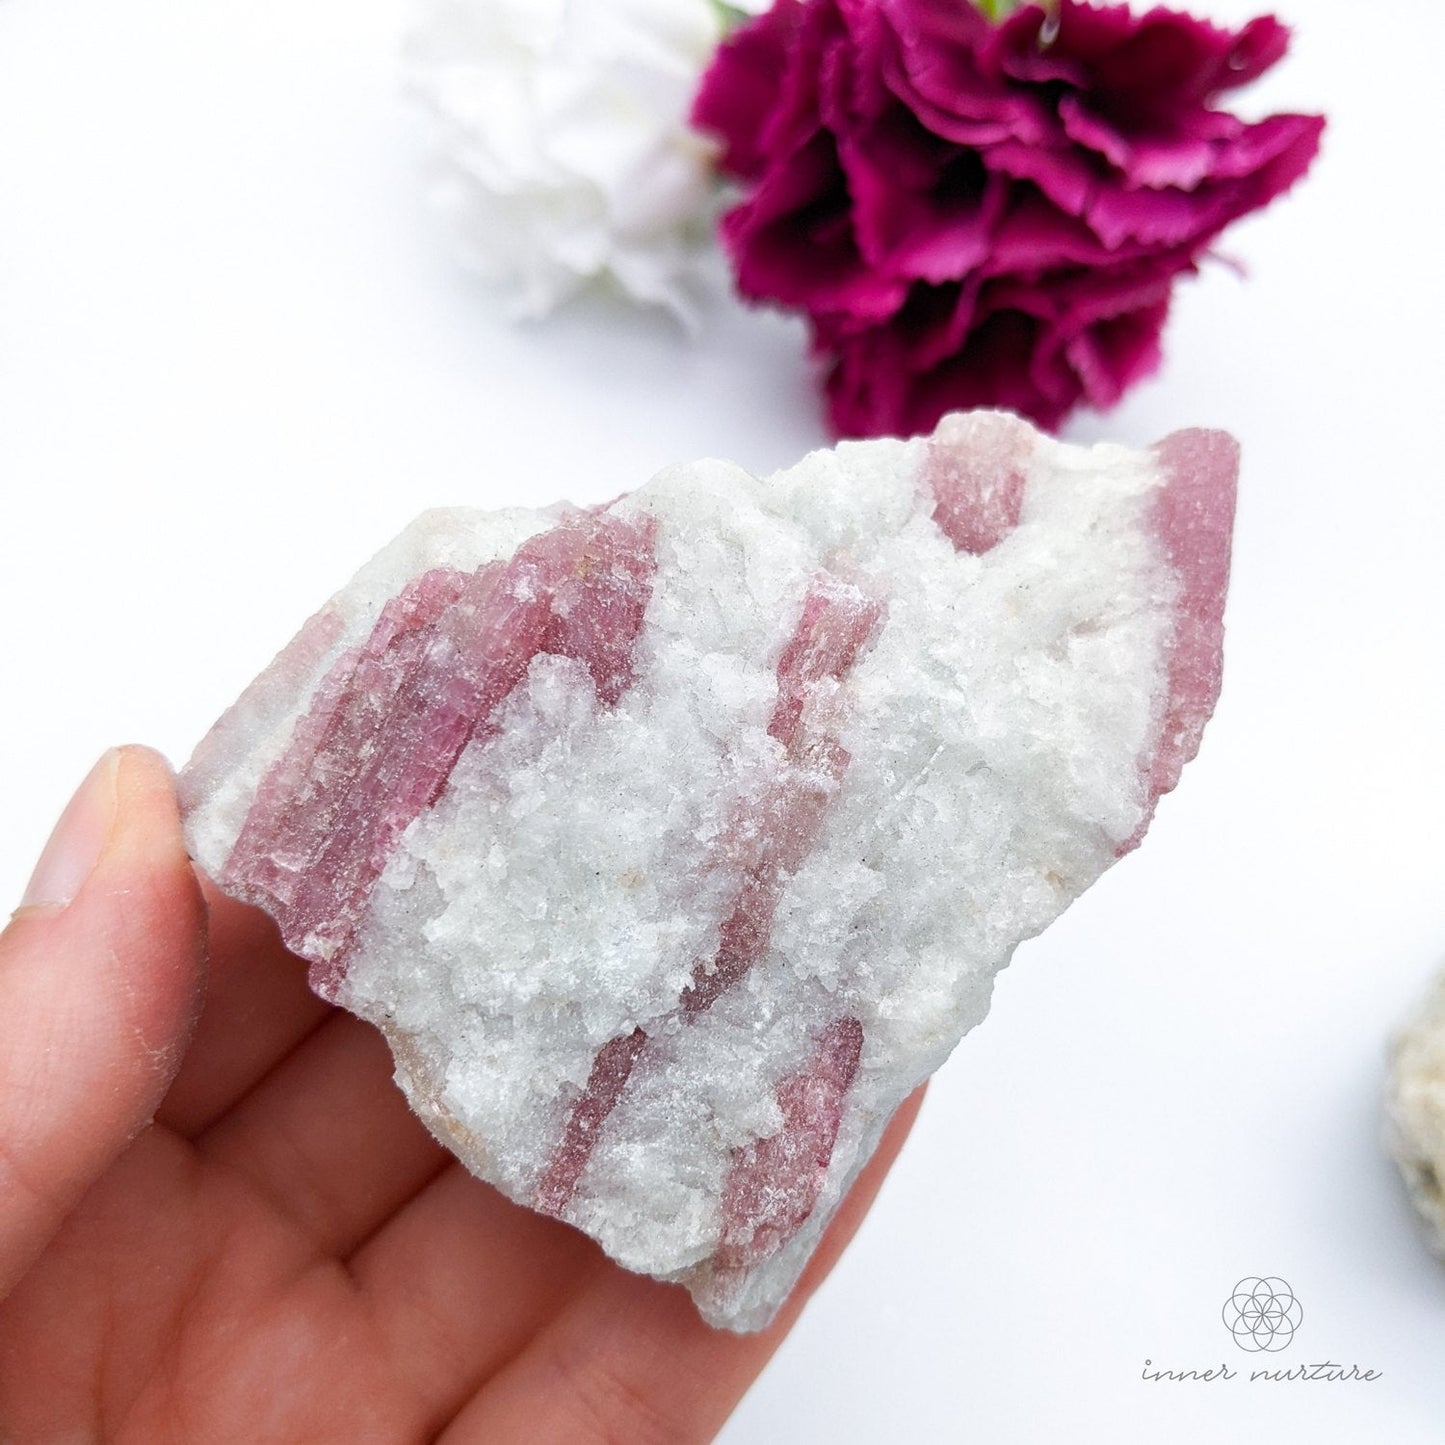 Pink Tourmaline Rough - Buy Crystals Online Australia | Inner Nurture - Ethically Sourced